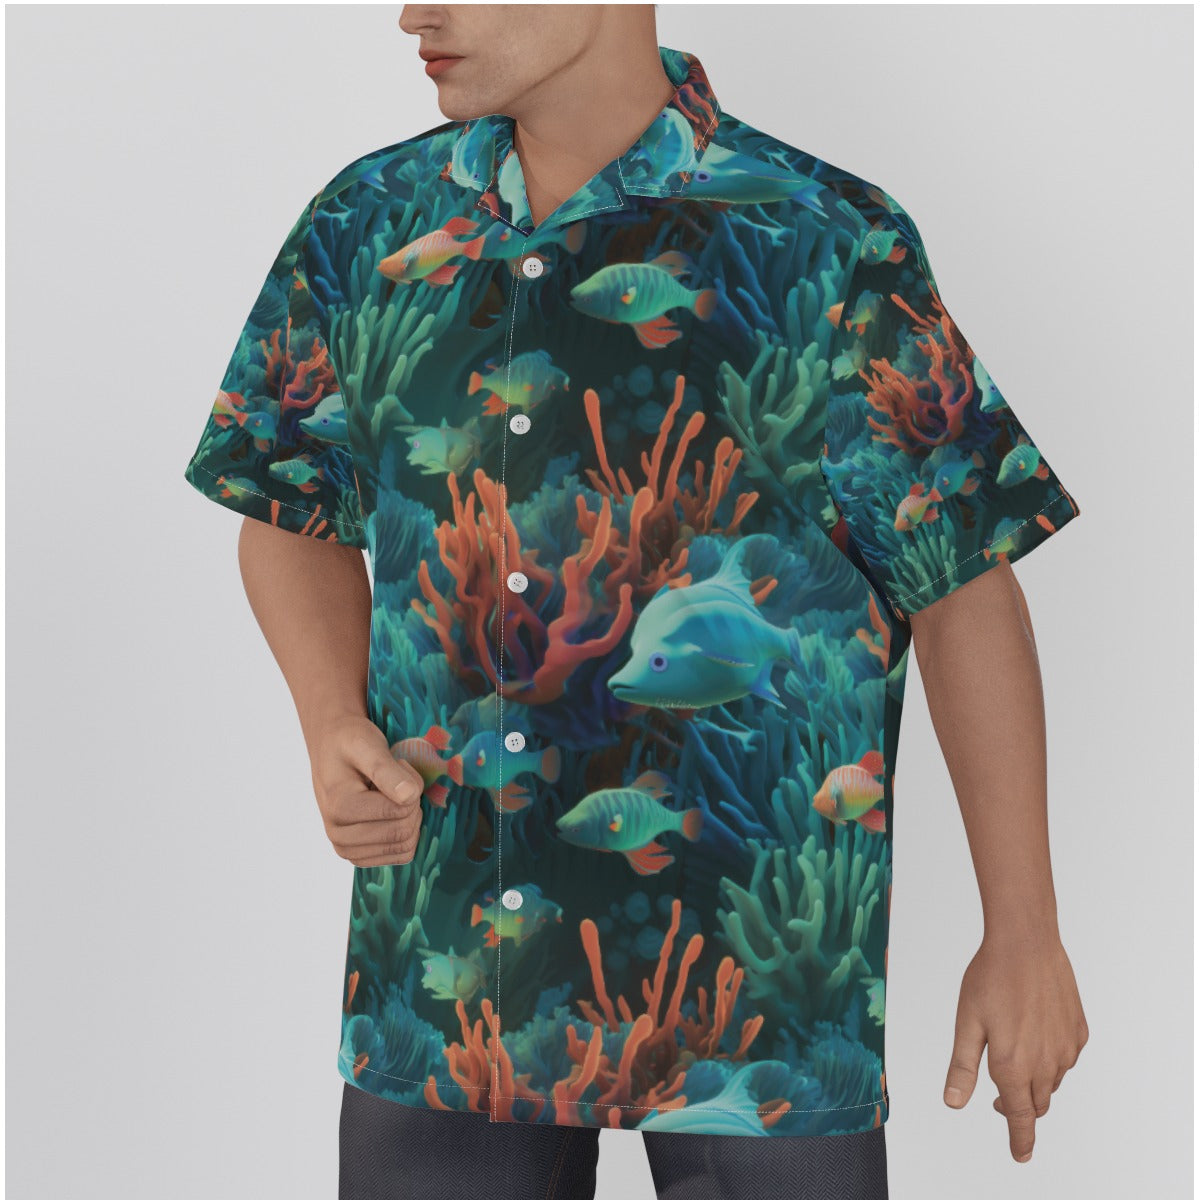 Aqua Sea Men's Hawaiian Shirt